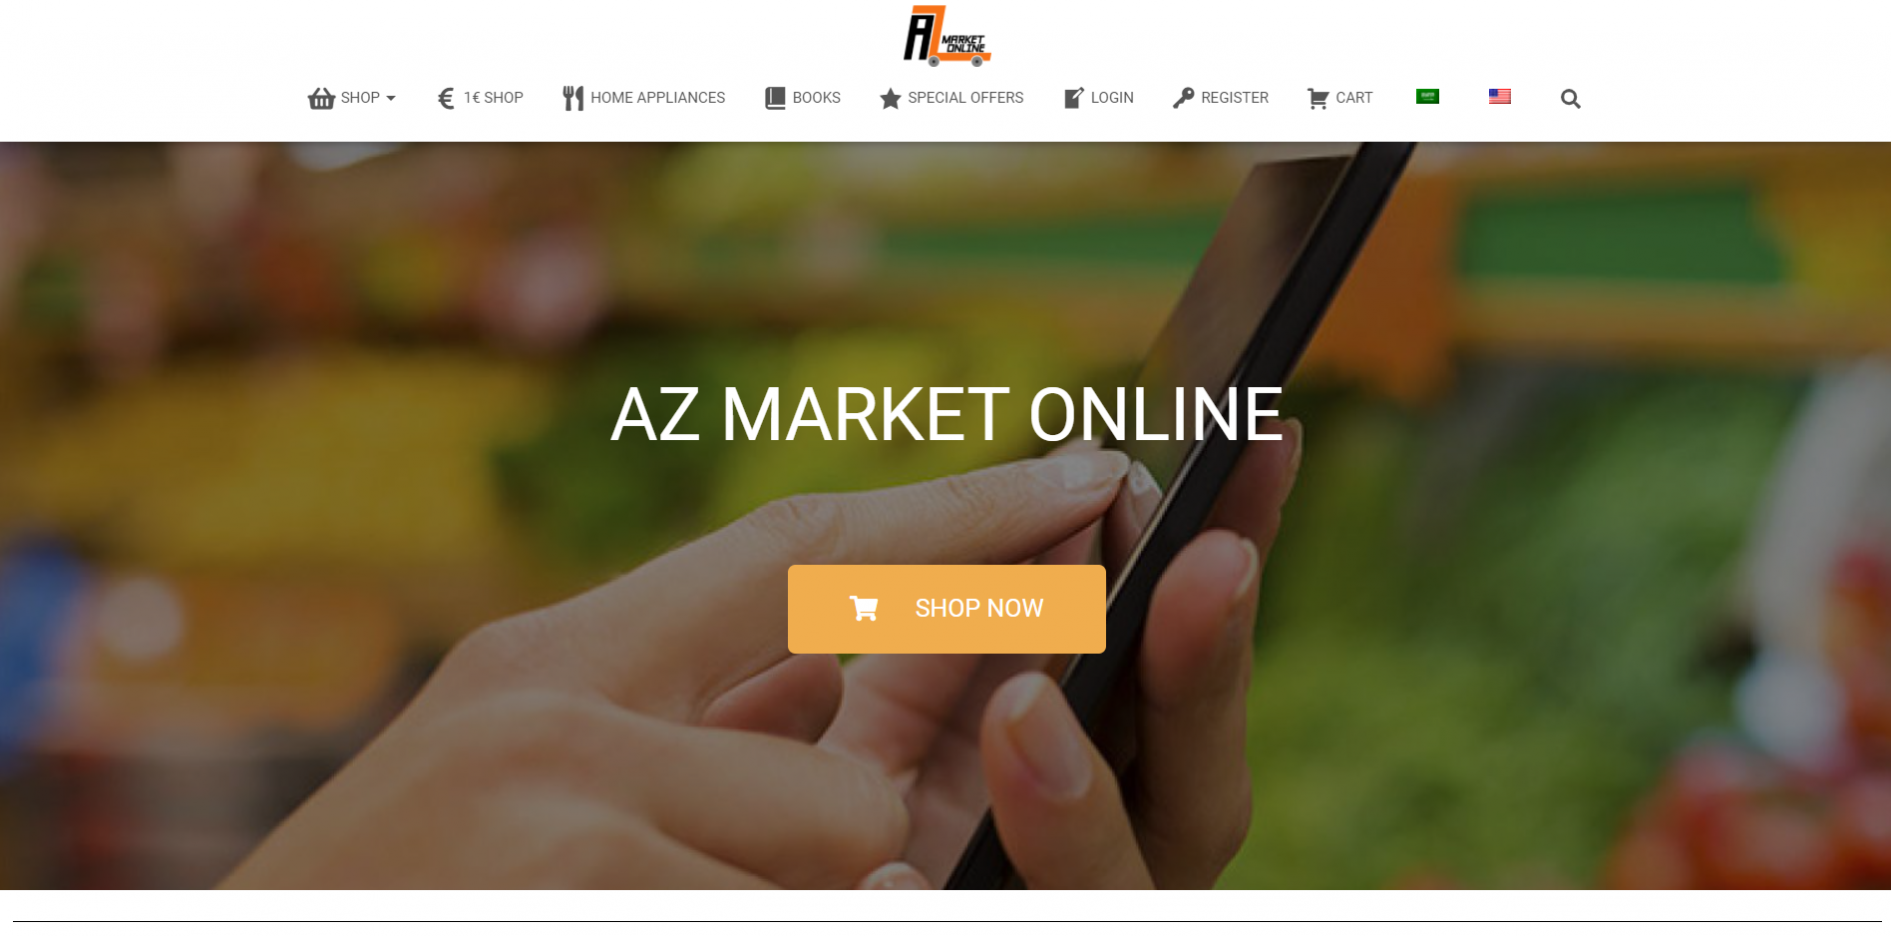 AZ Market Online 1